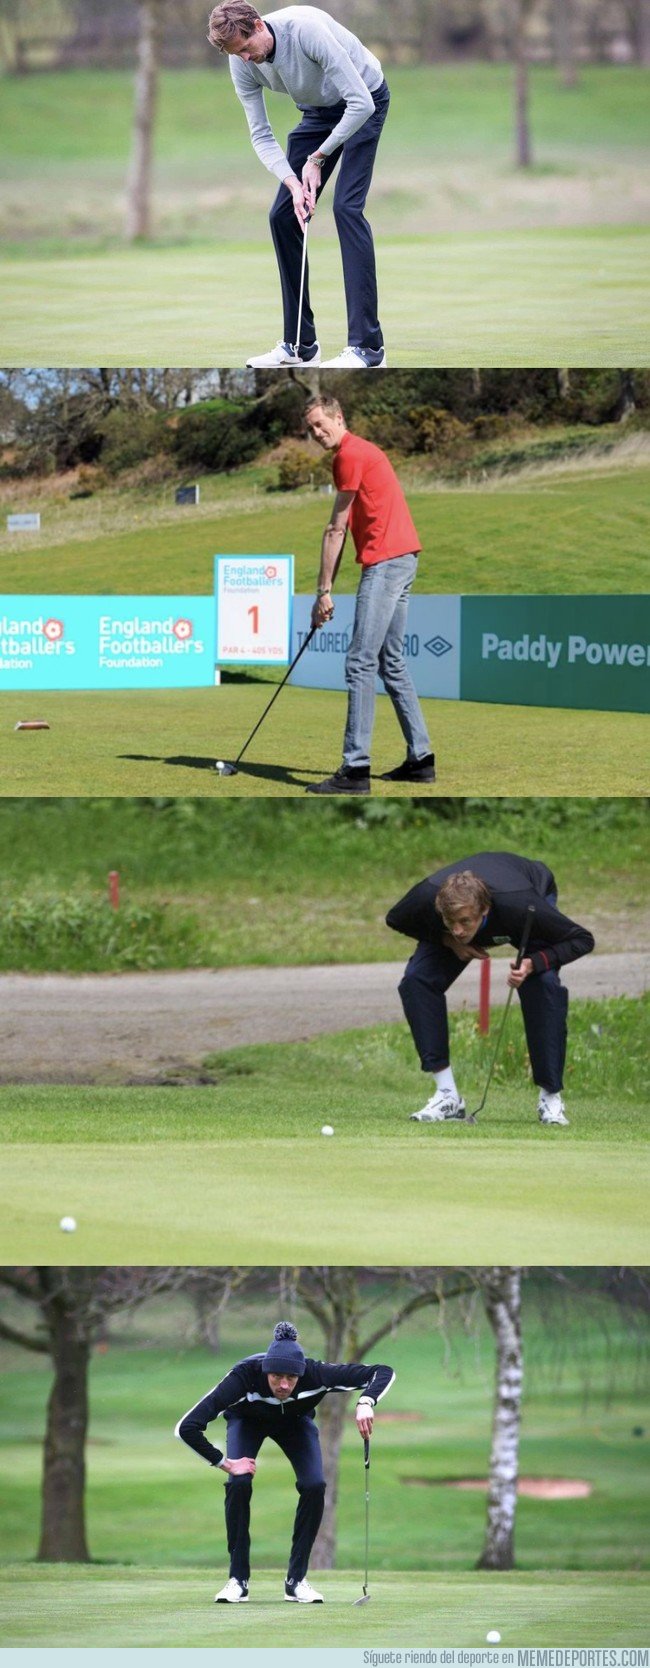 1047103 - Peter Crouch jugando a golf con un palo de medida estándar. No necesitas ver nada más hoy